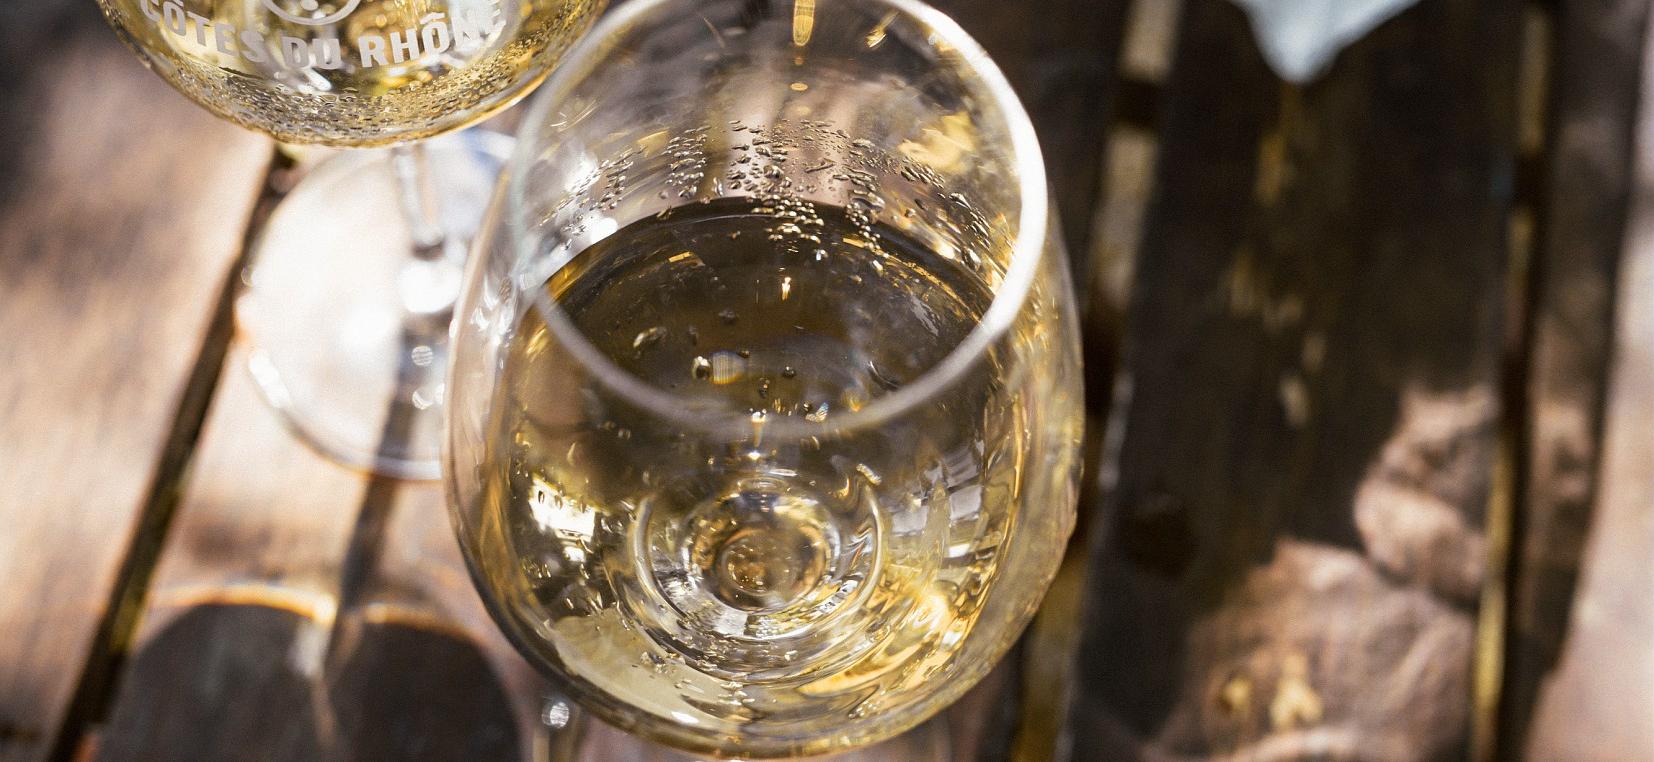 Les vins rhodaniens sont-ils sensibles aux "goûts de lumière"?